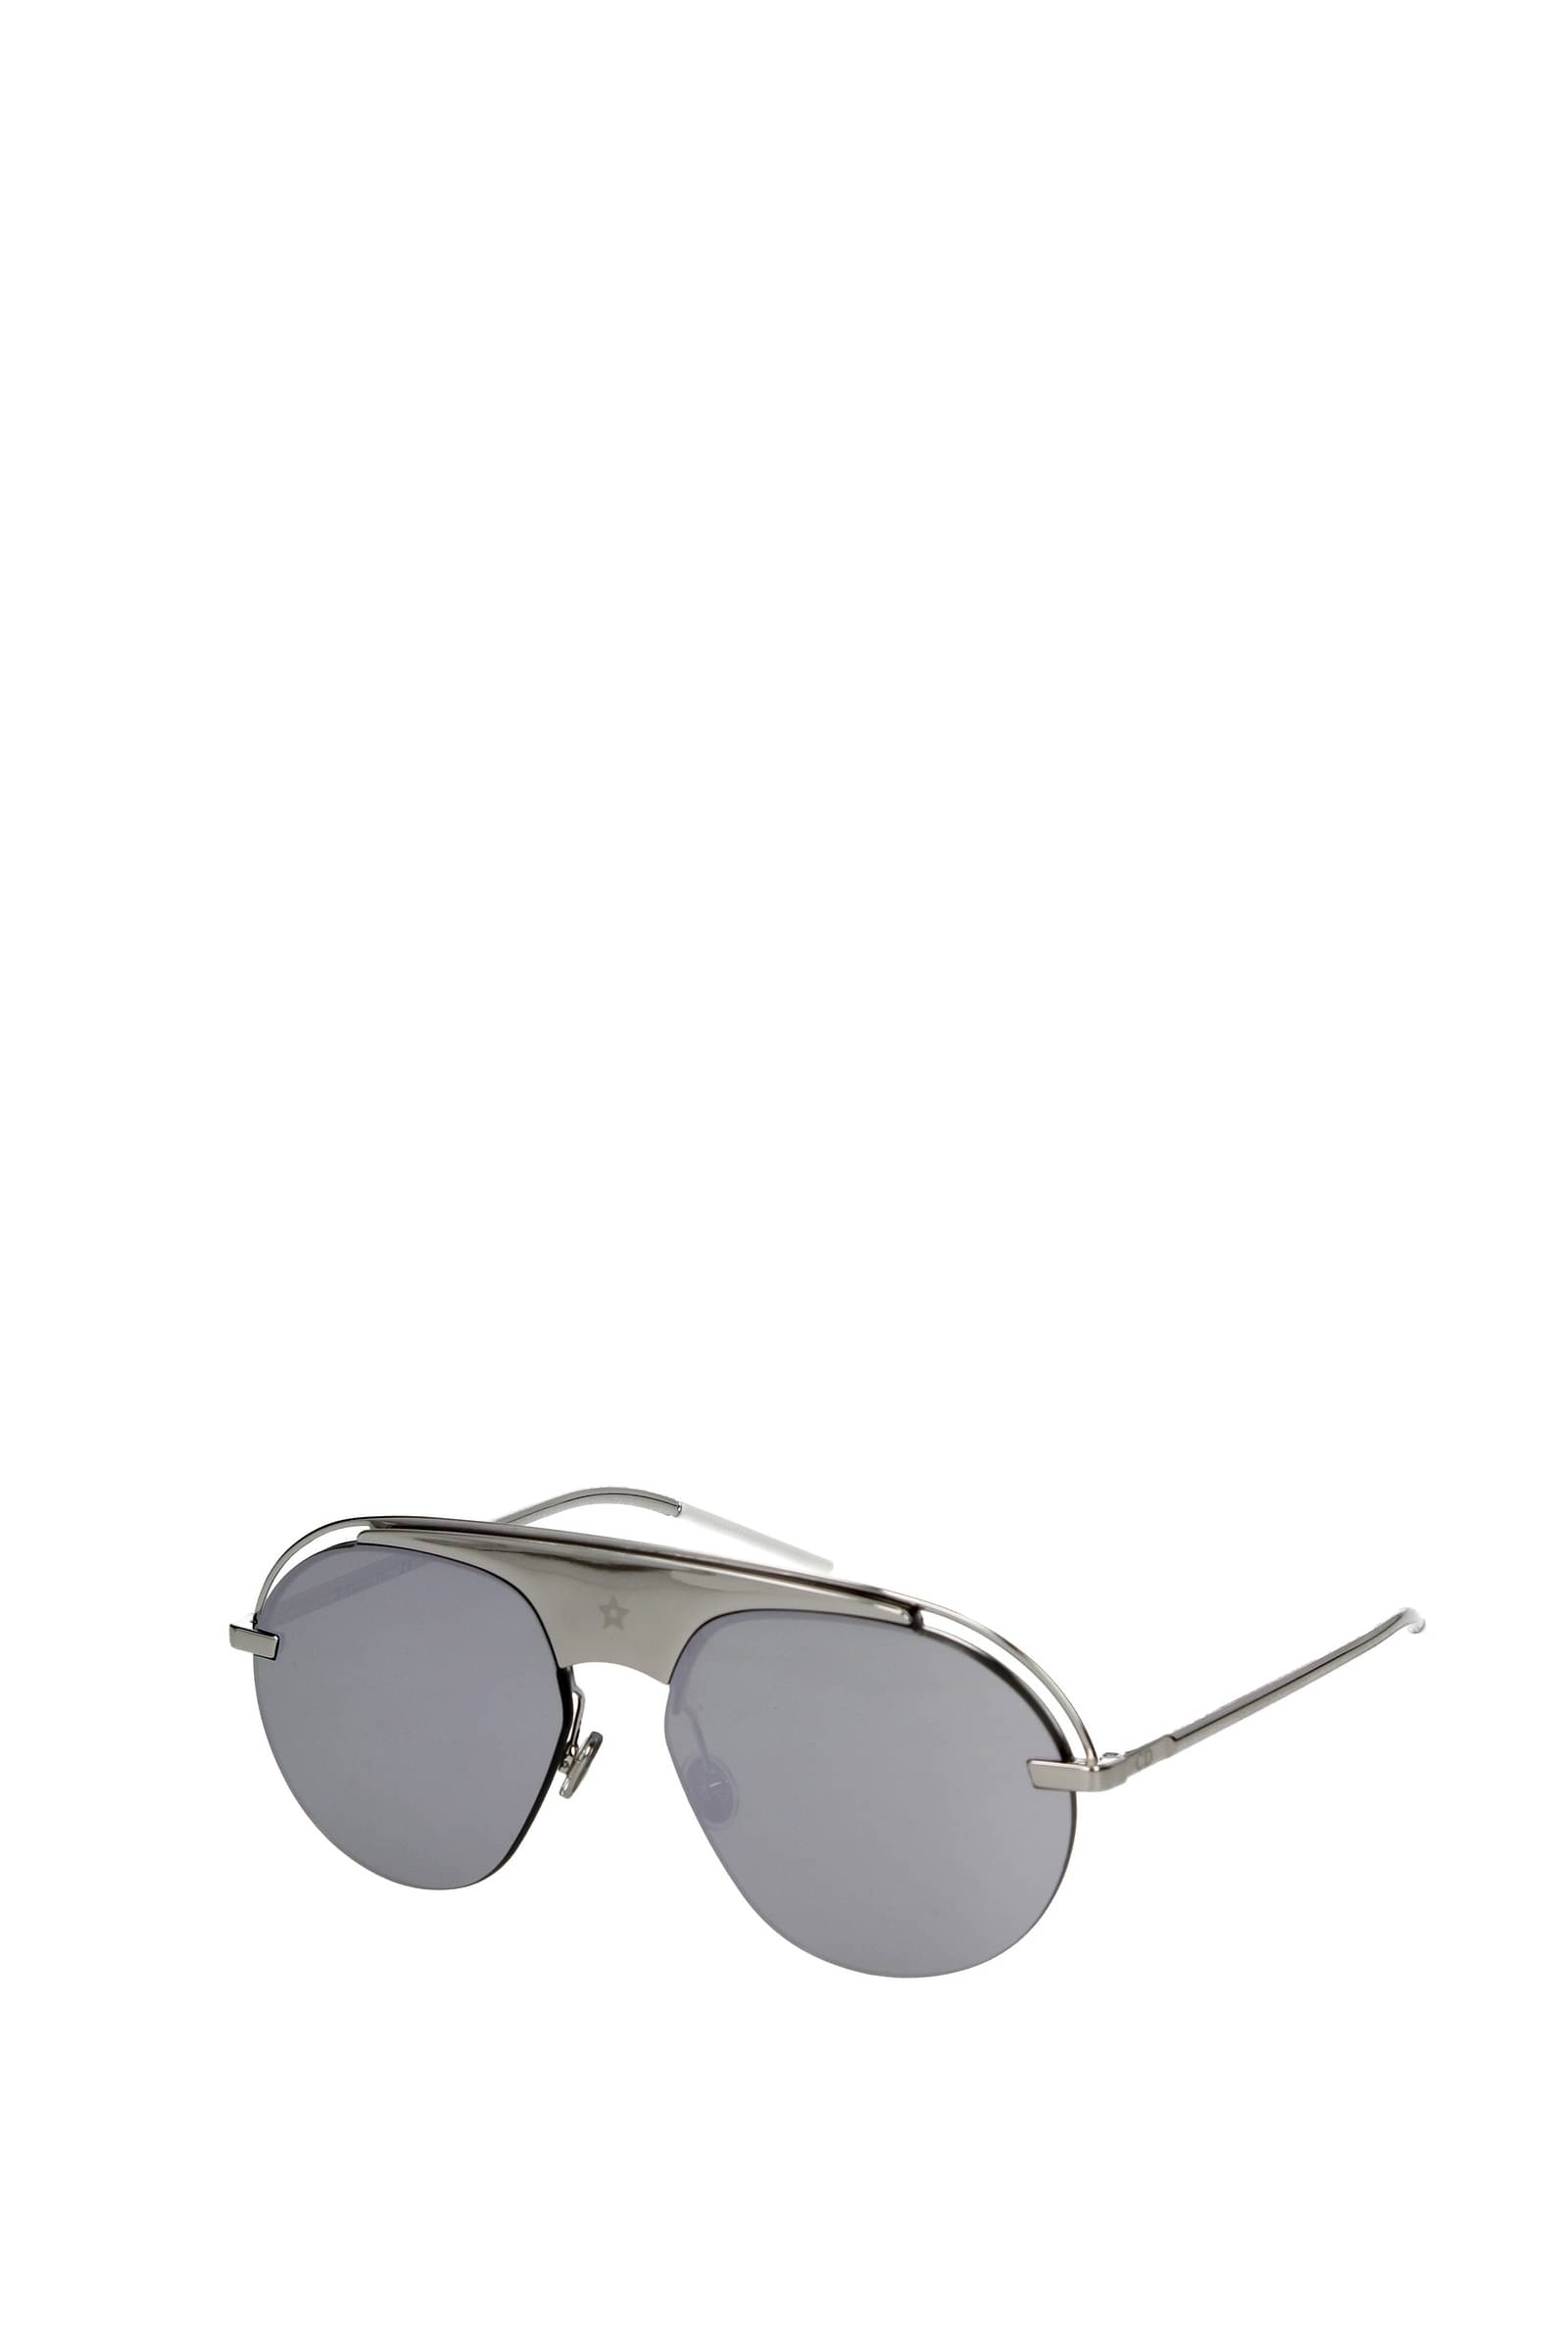 Designer Sunglasses for Men  Aviator Round  Shield  DIOR SG